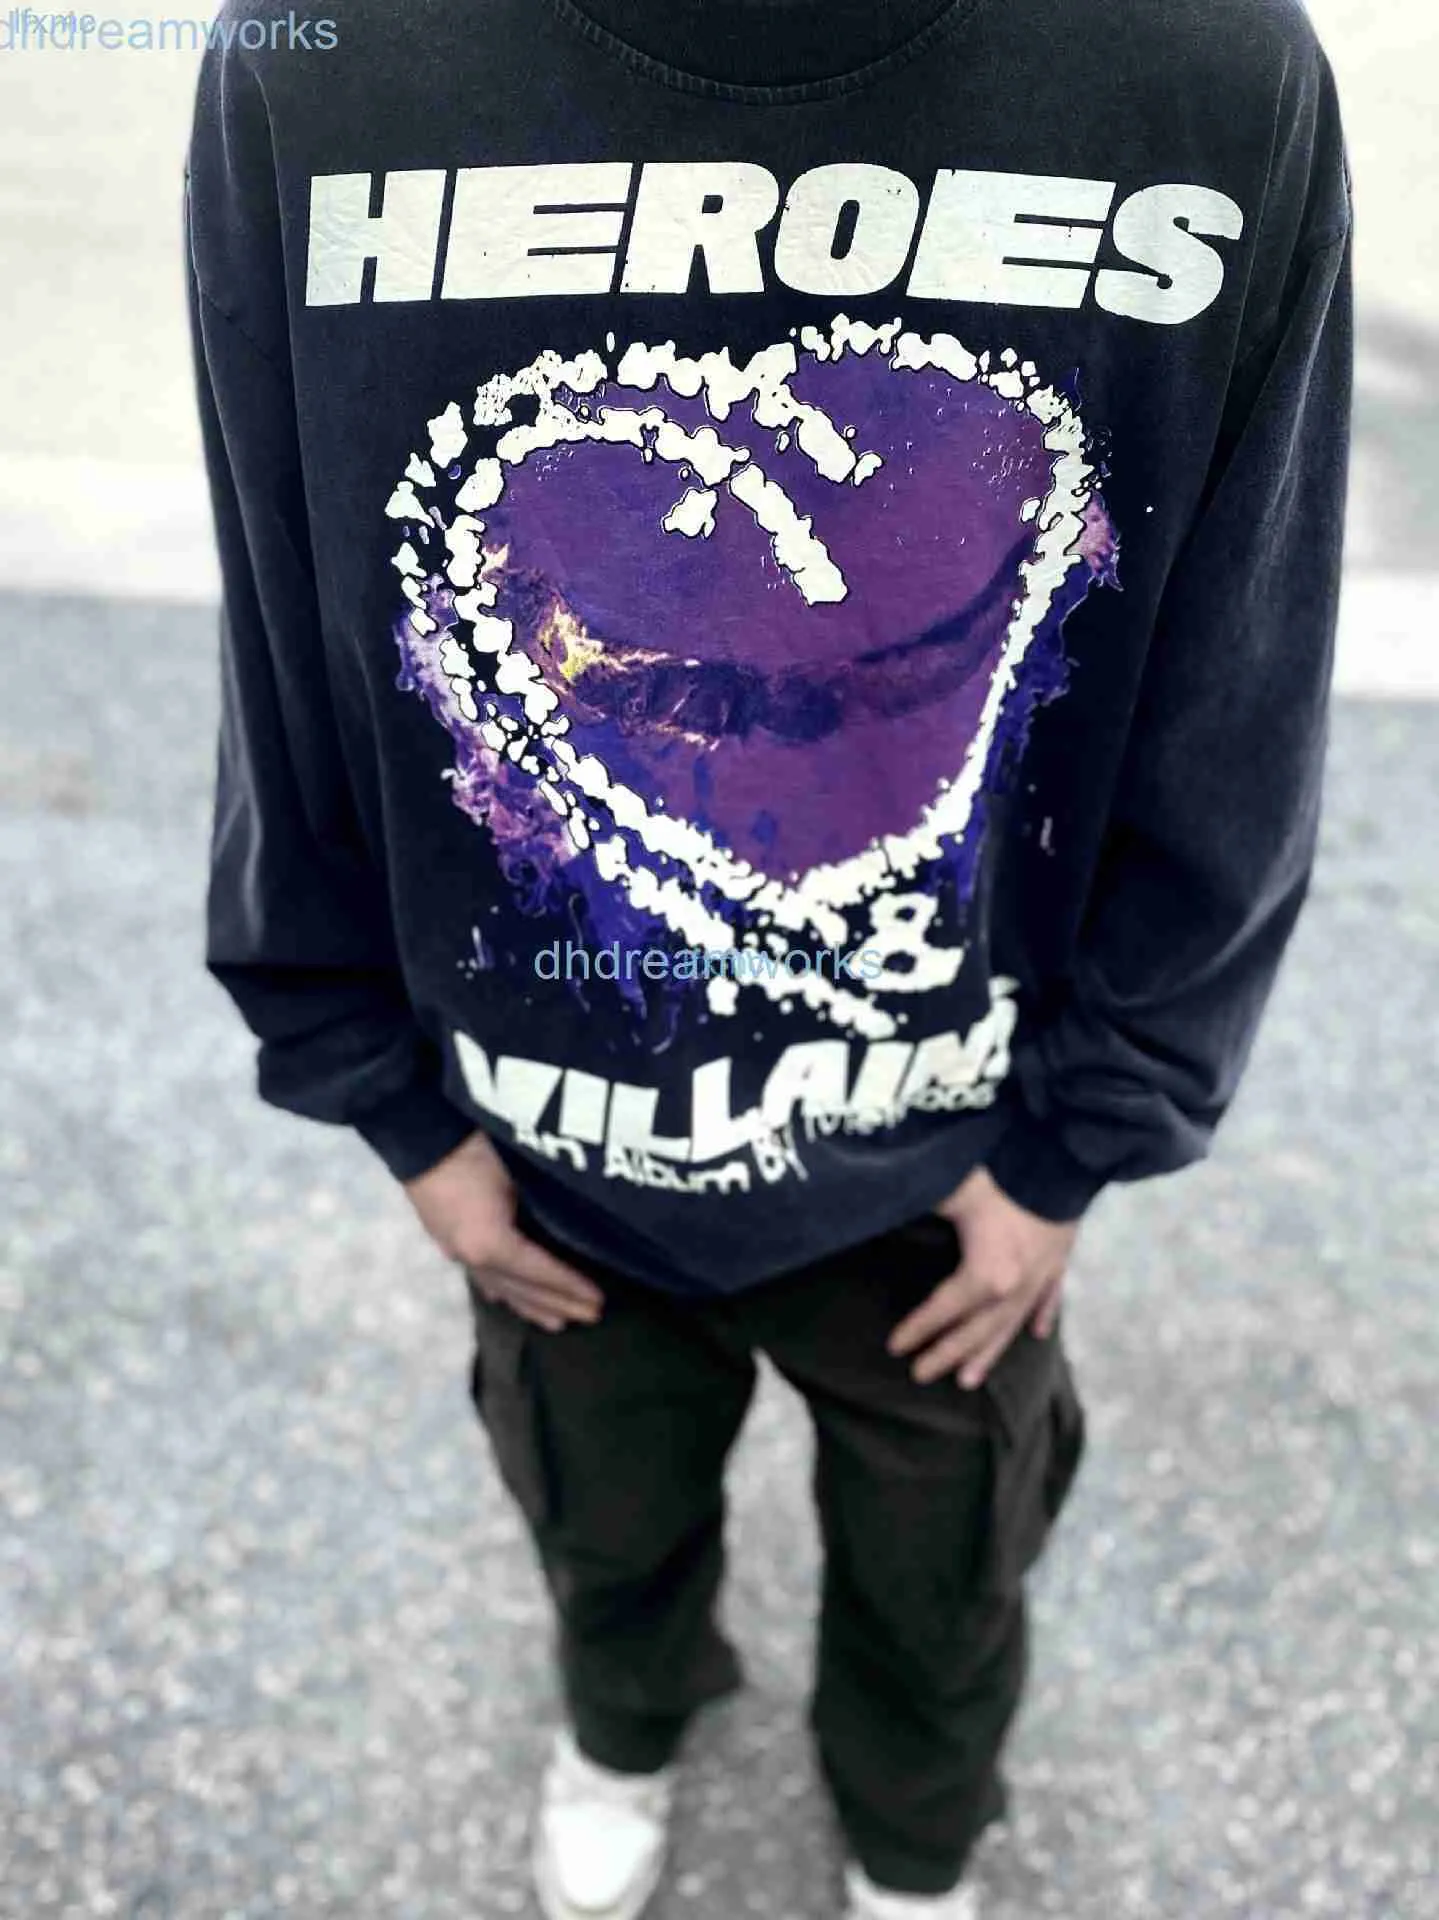 Эксклюзивная моющаяся футболка с длинными рукавами Hellstar с принтом «Пурпурное сердце» Kanyewest Same Old Eohi